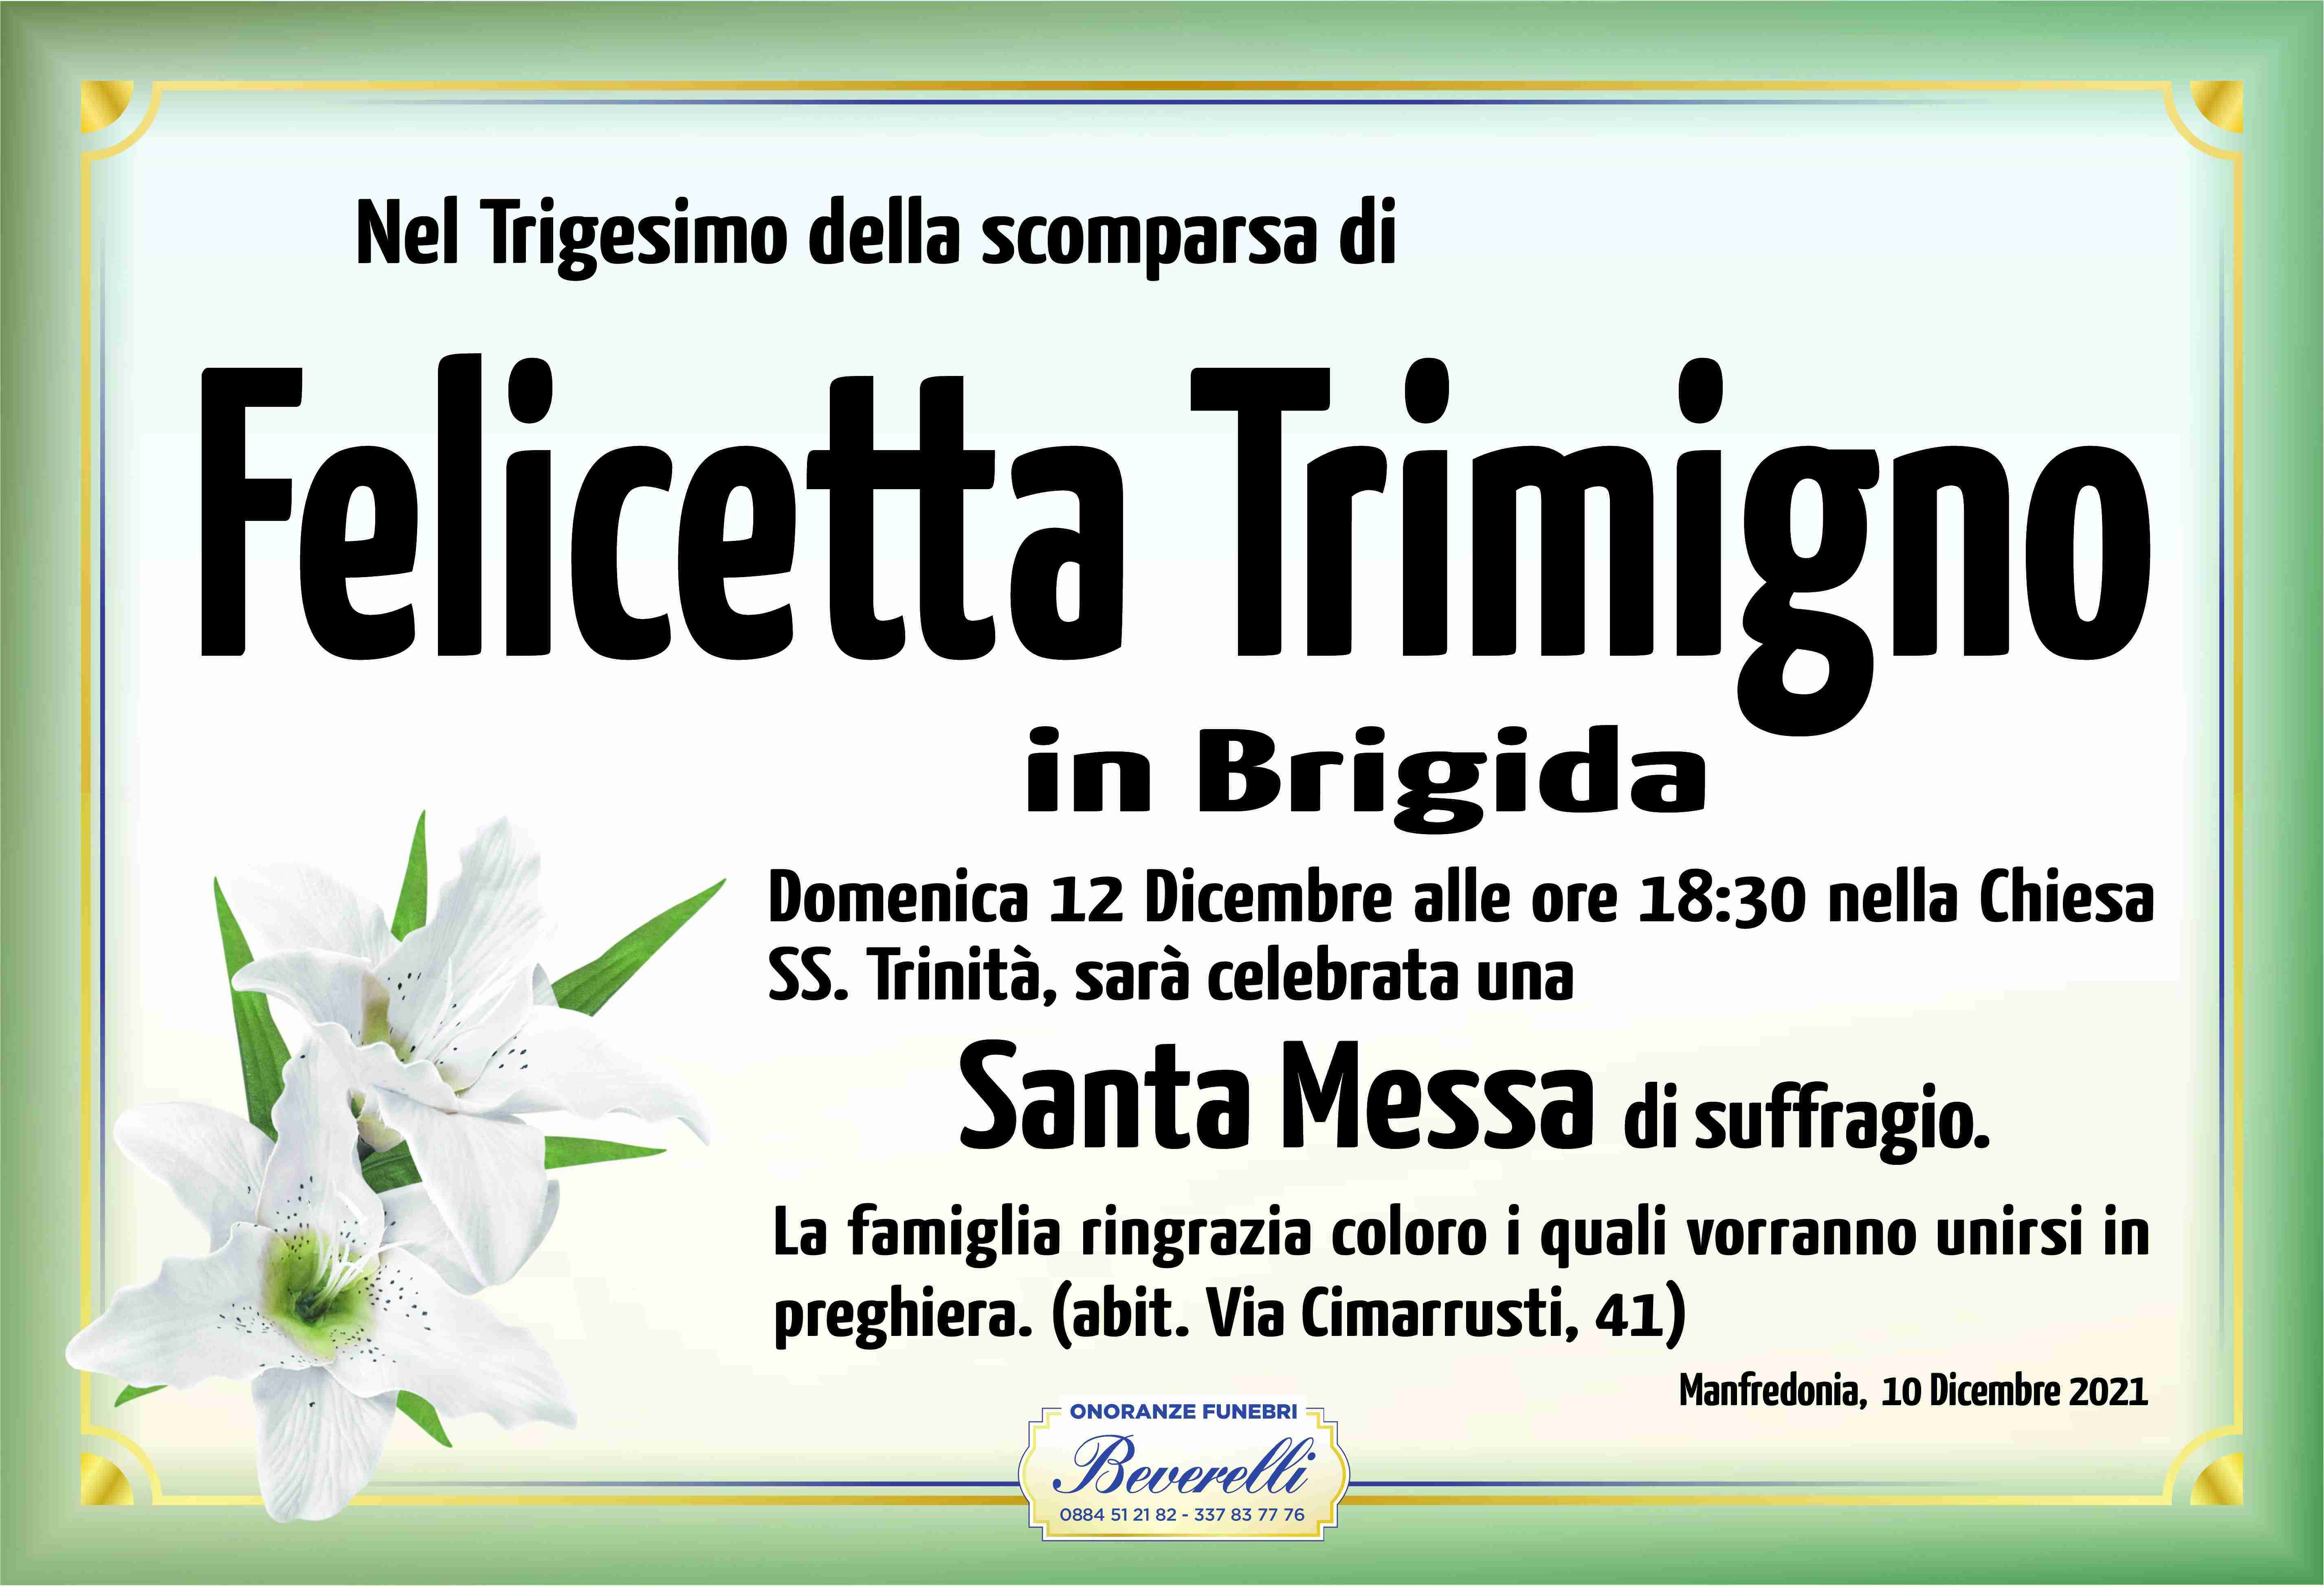 Felicetta Trimigno